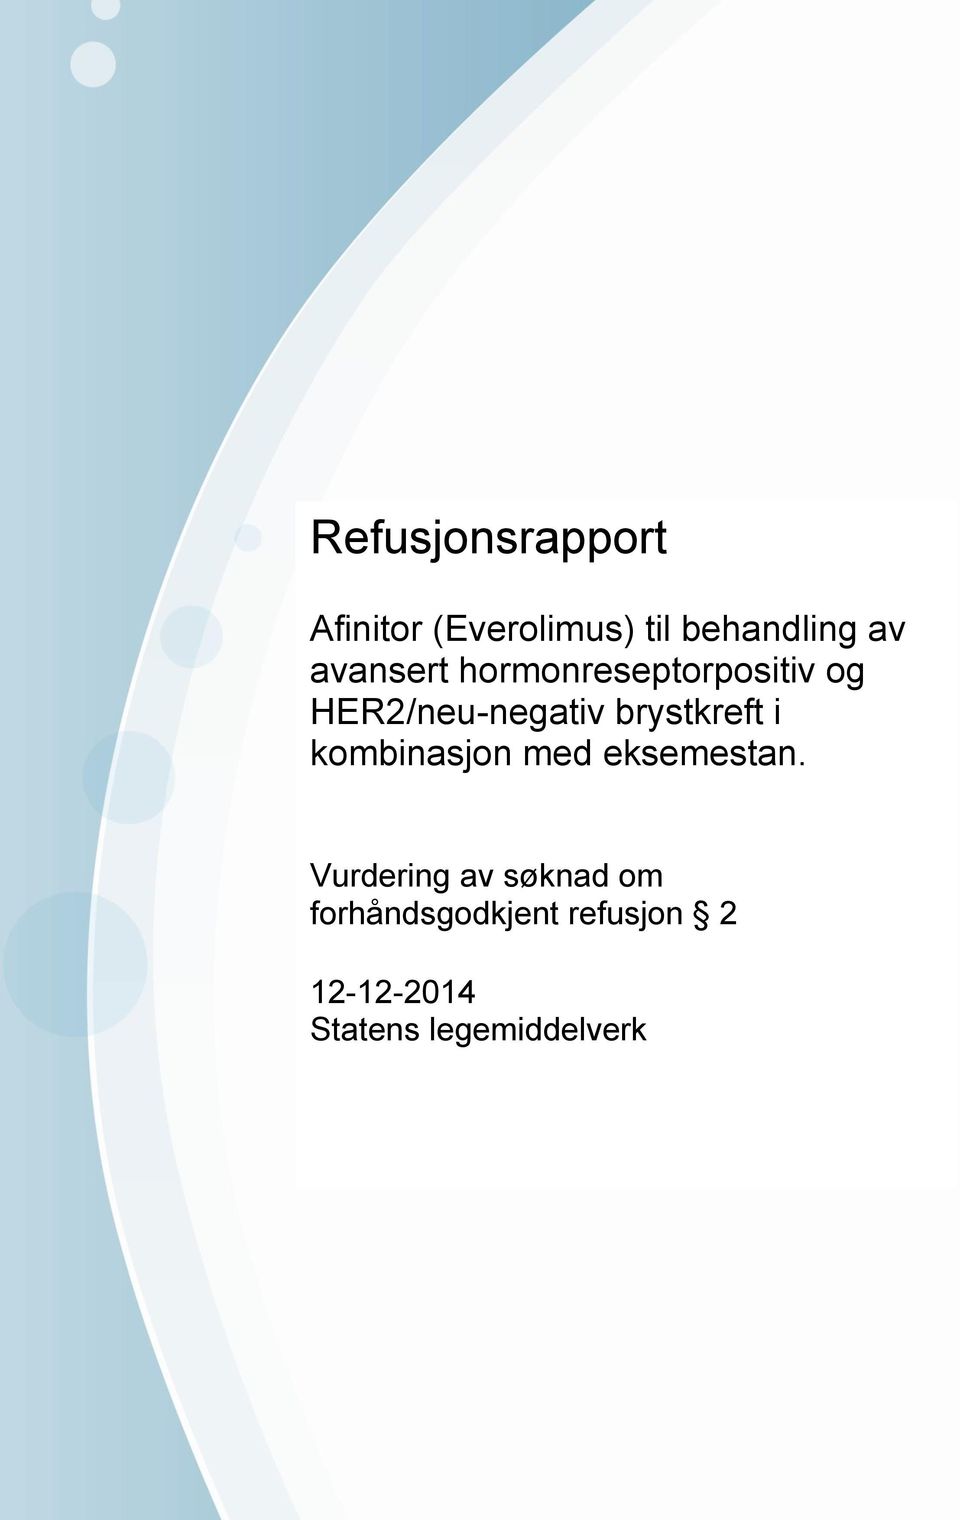 Vurdering av søknad om forhåndsgodkjent refusjon 2 12-12-2014 Statens legemiddelverk Brev stiles til Statens